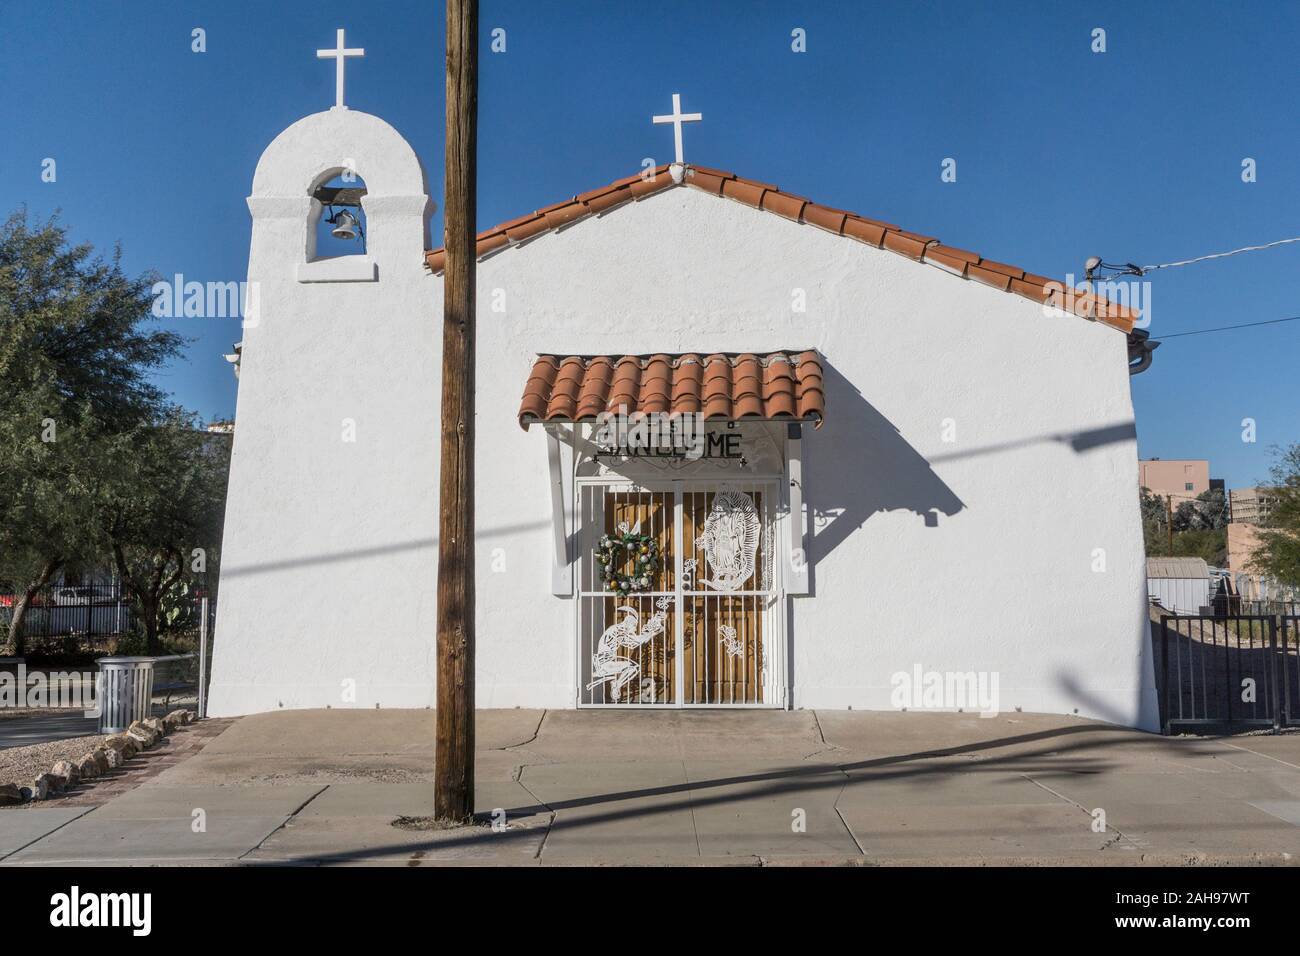 La pequeña iglesia católica romana con los lados inclinados de fachada, un falso frente a parecerse a la antigua misión de iglesias, en el barrio histórico distrito Tucson Arizona Foto de stock